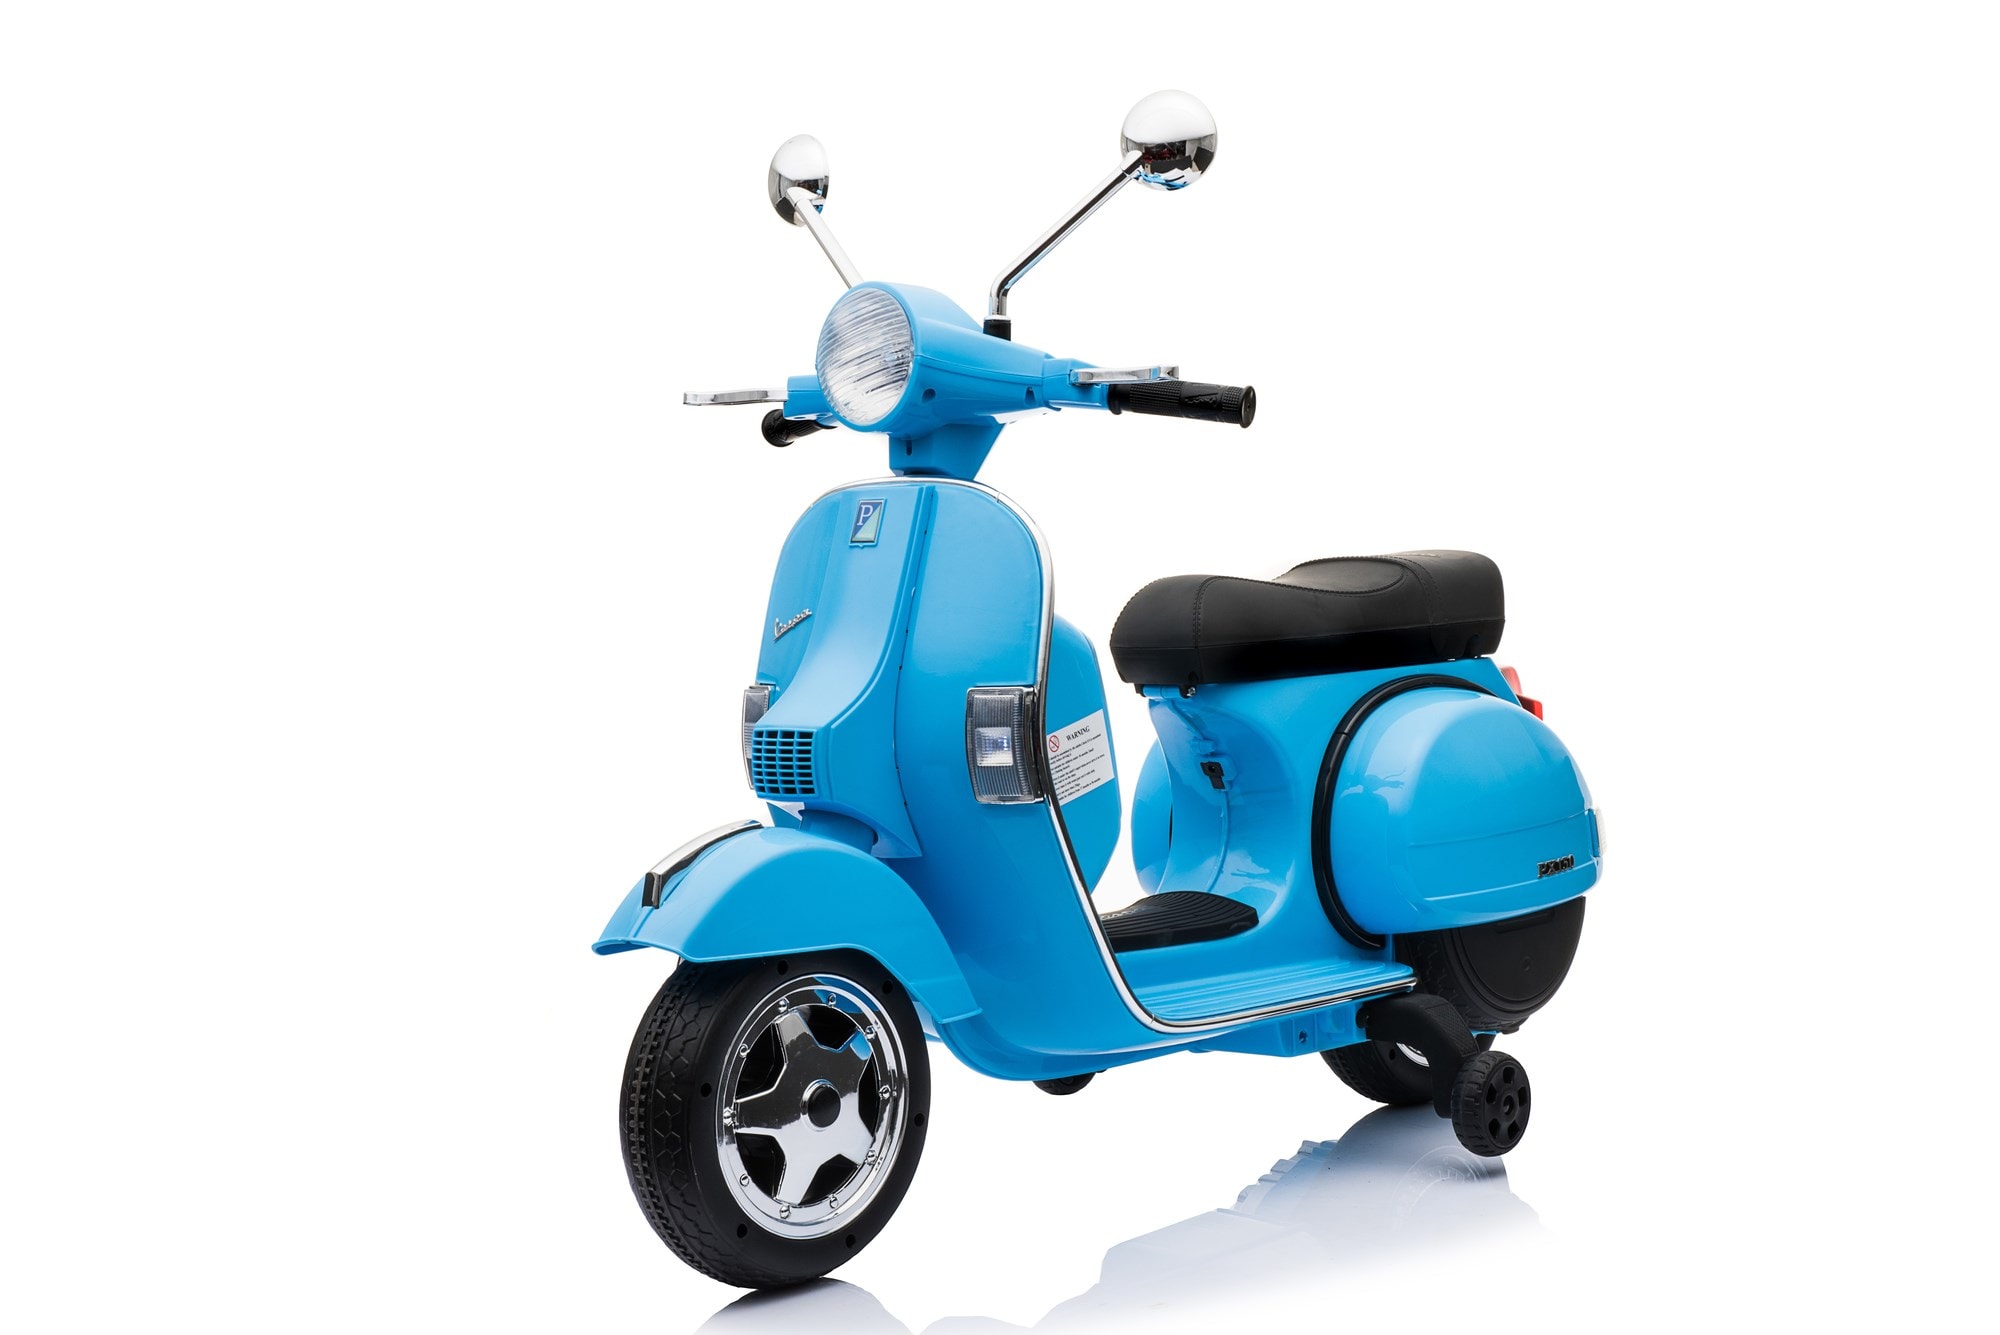 Scooter electrique vespa 18w pour enfant - bleu ciel - avec klaxon